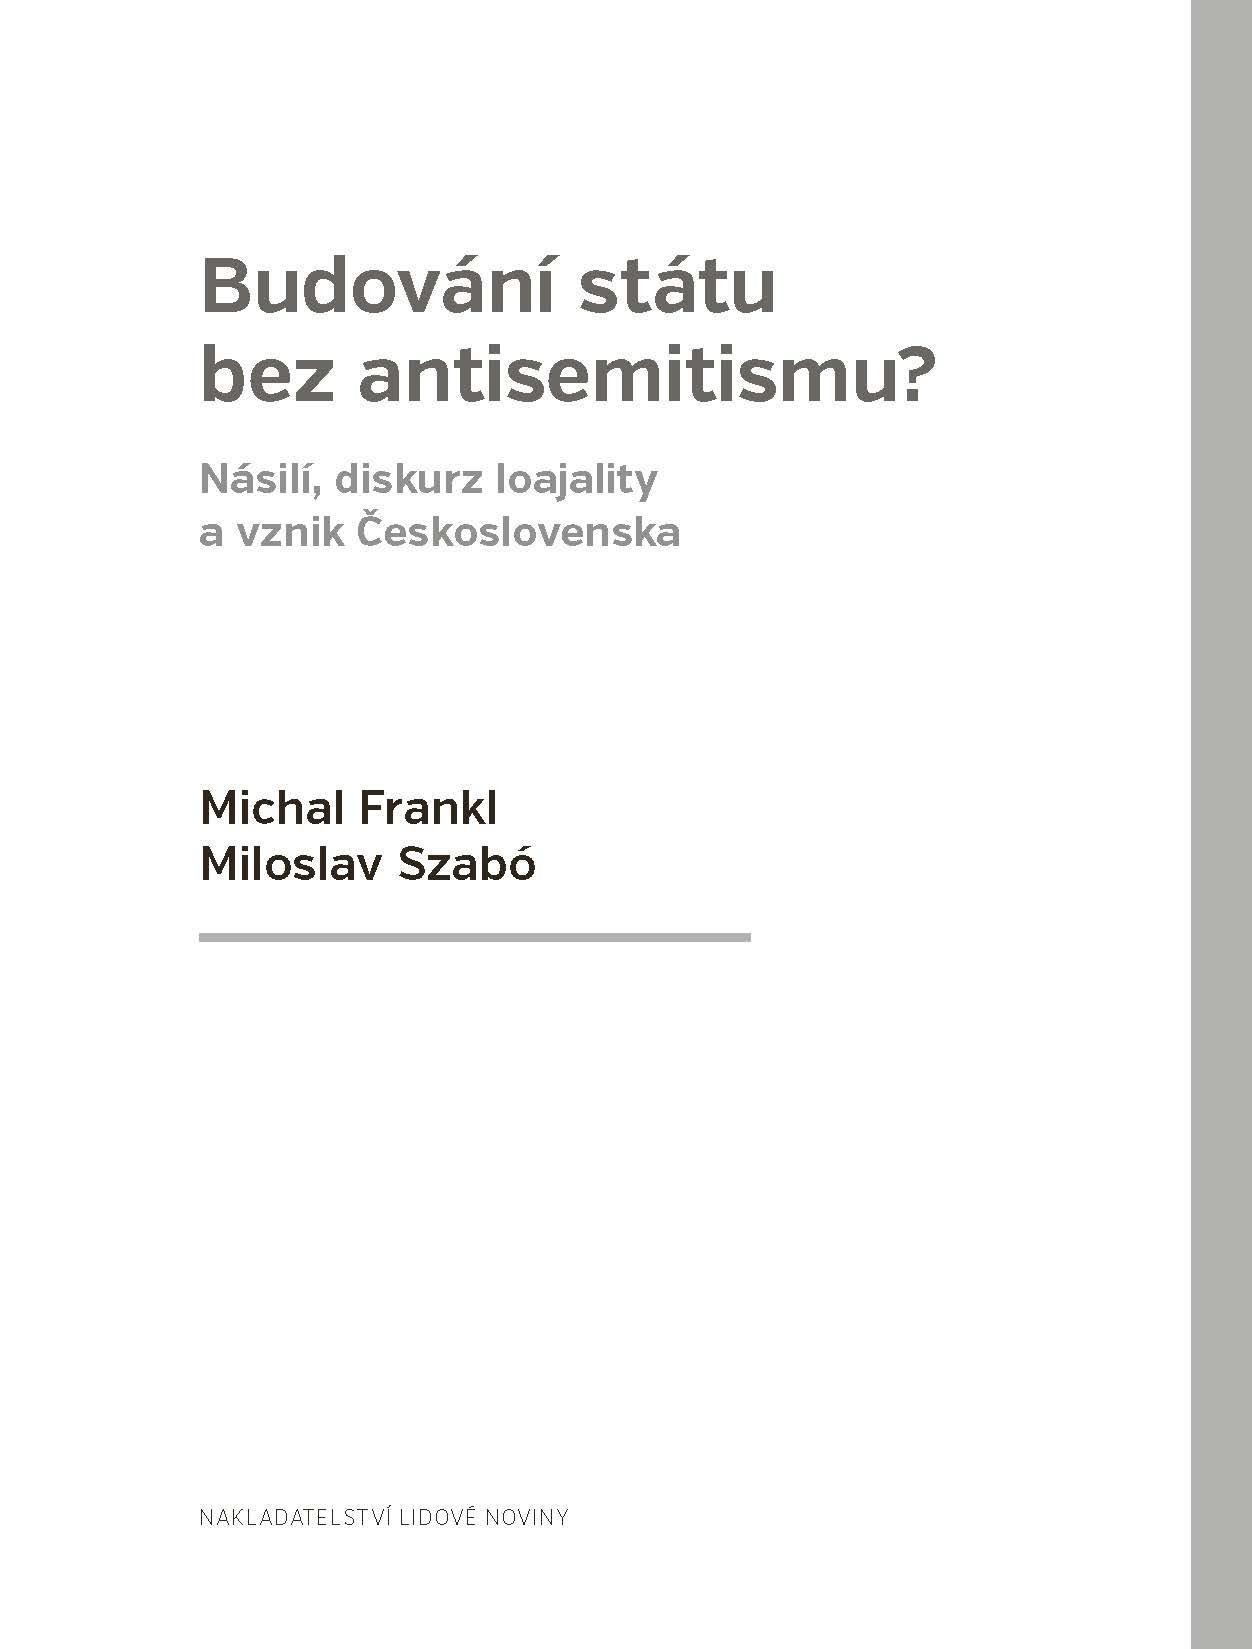 Budování státu bez antisemitismu? ukázka-1